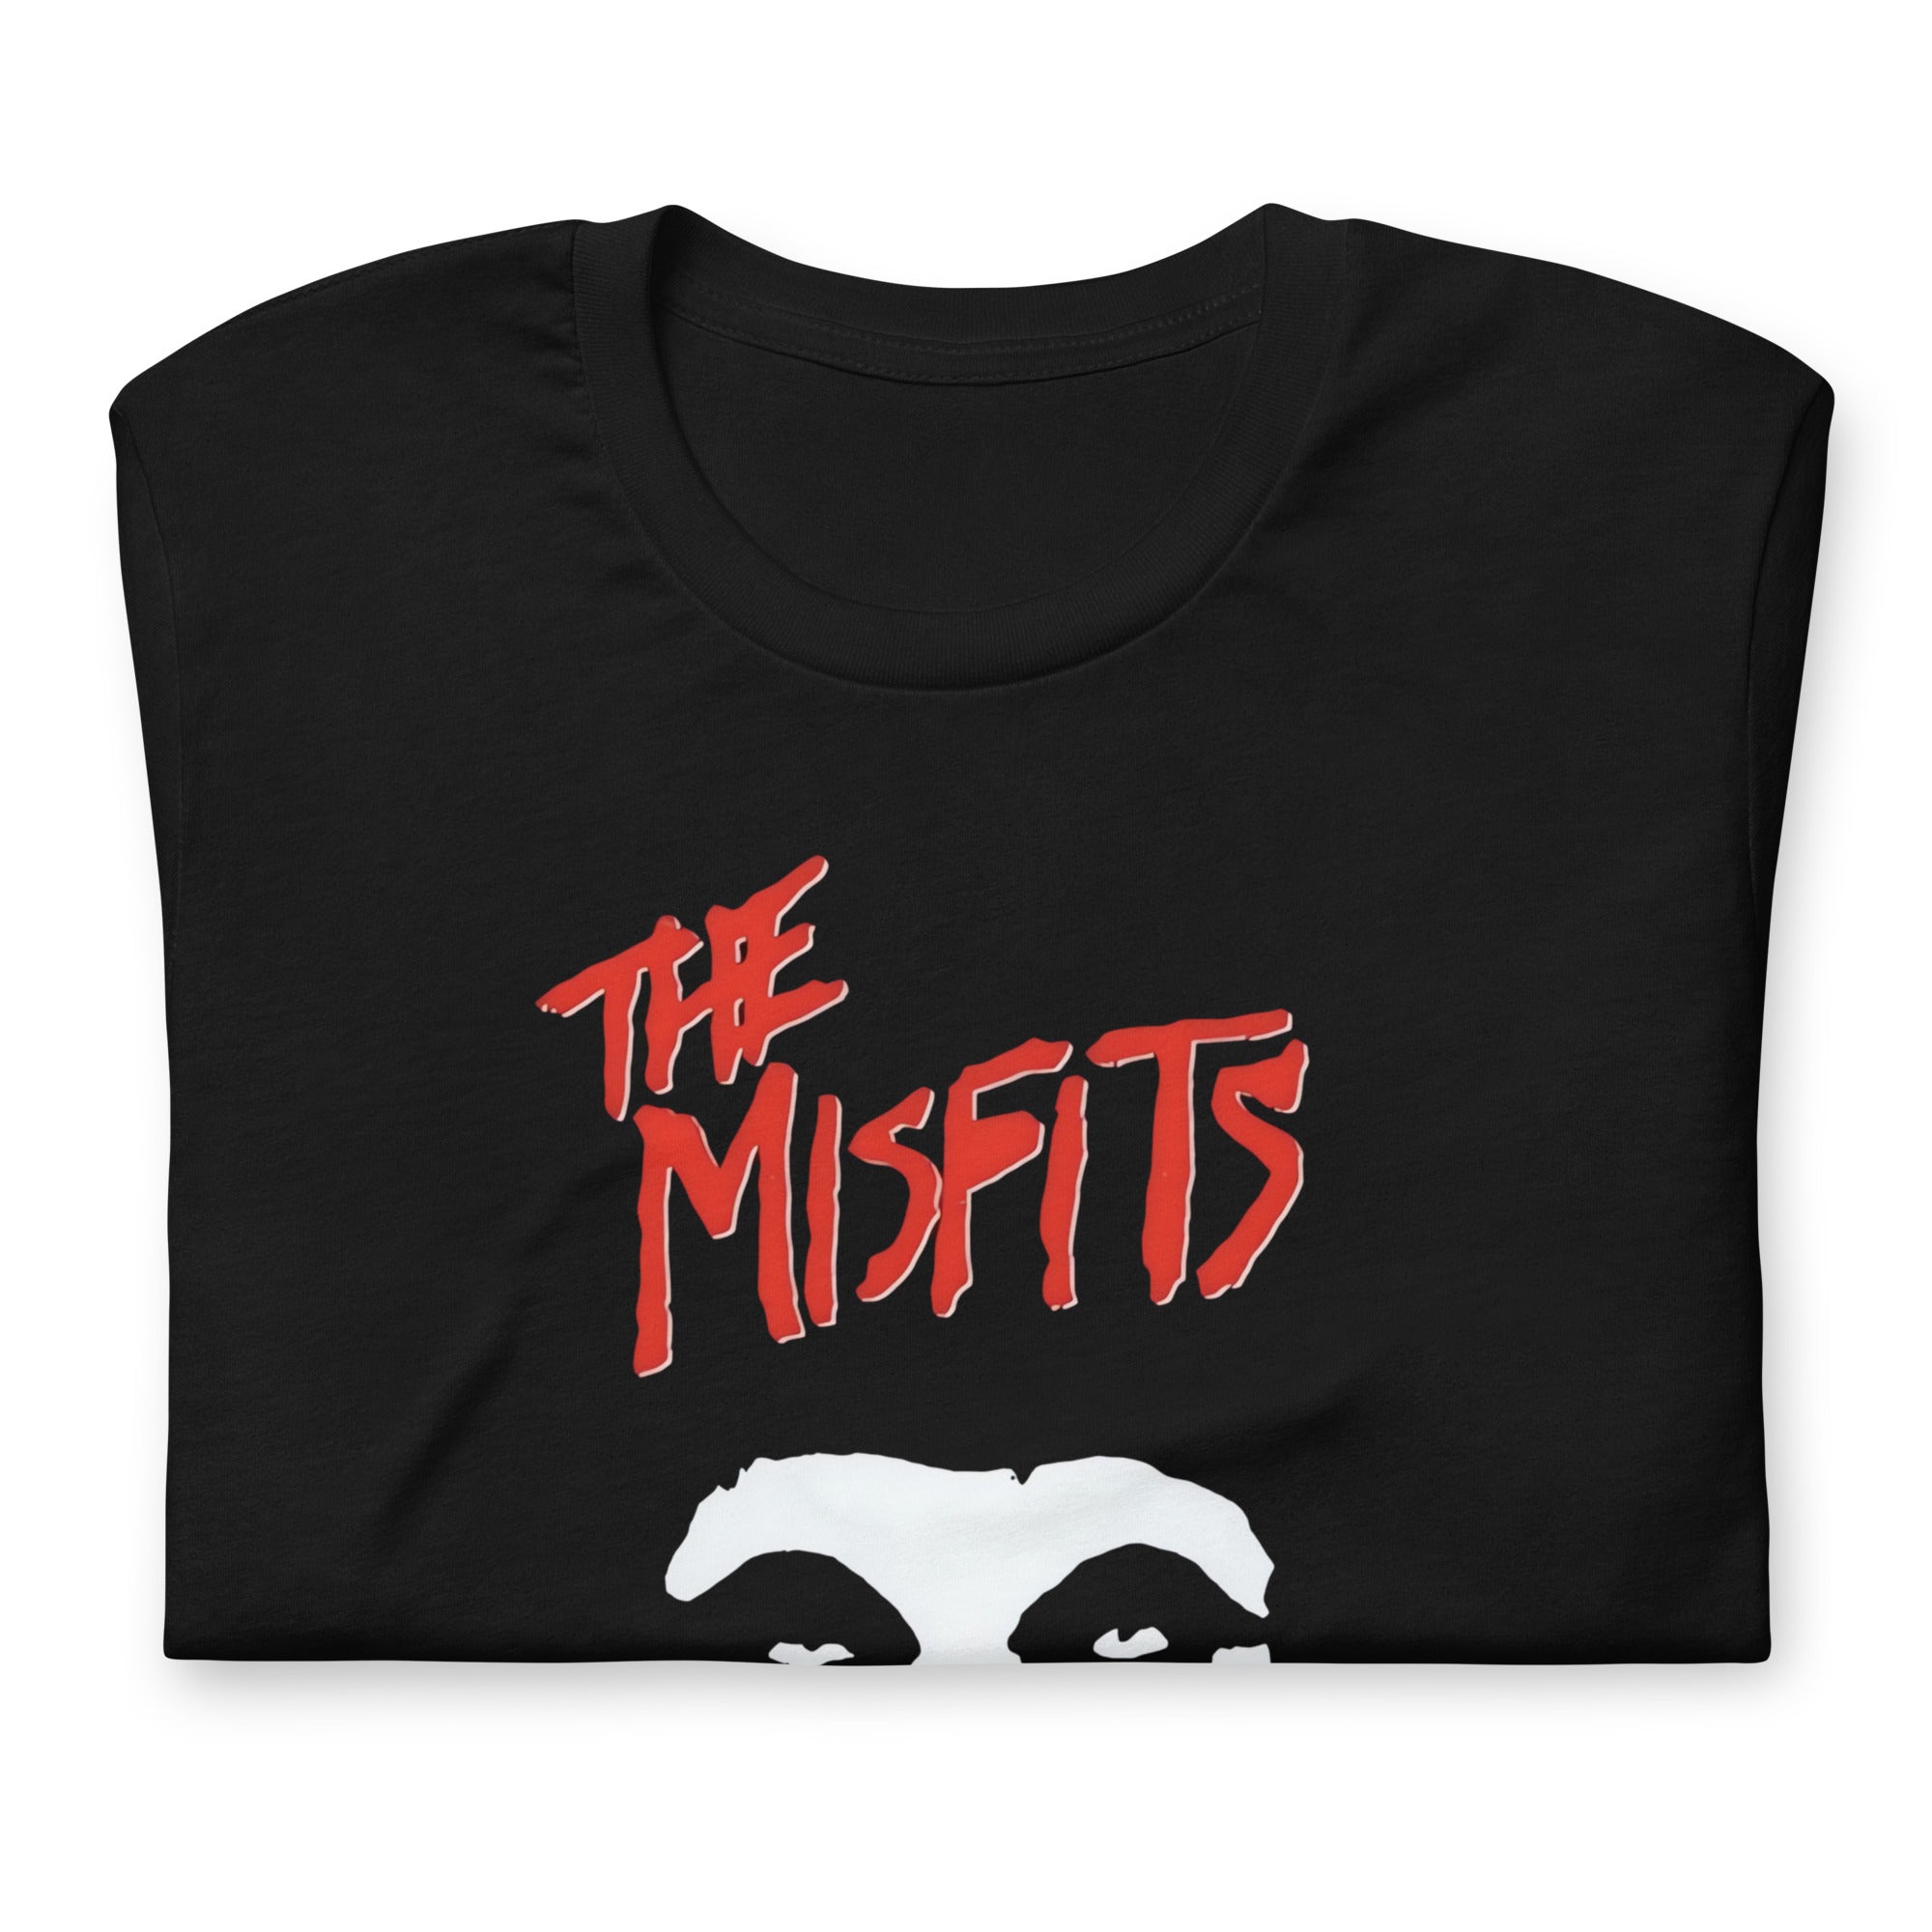 Camiseta The Misfits, nuestras opciones de playeras son Unisex. disponible en Superstar. Compra y envíos internacionales.